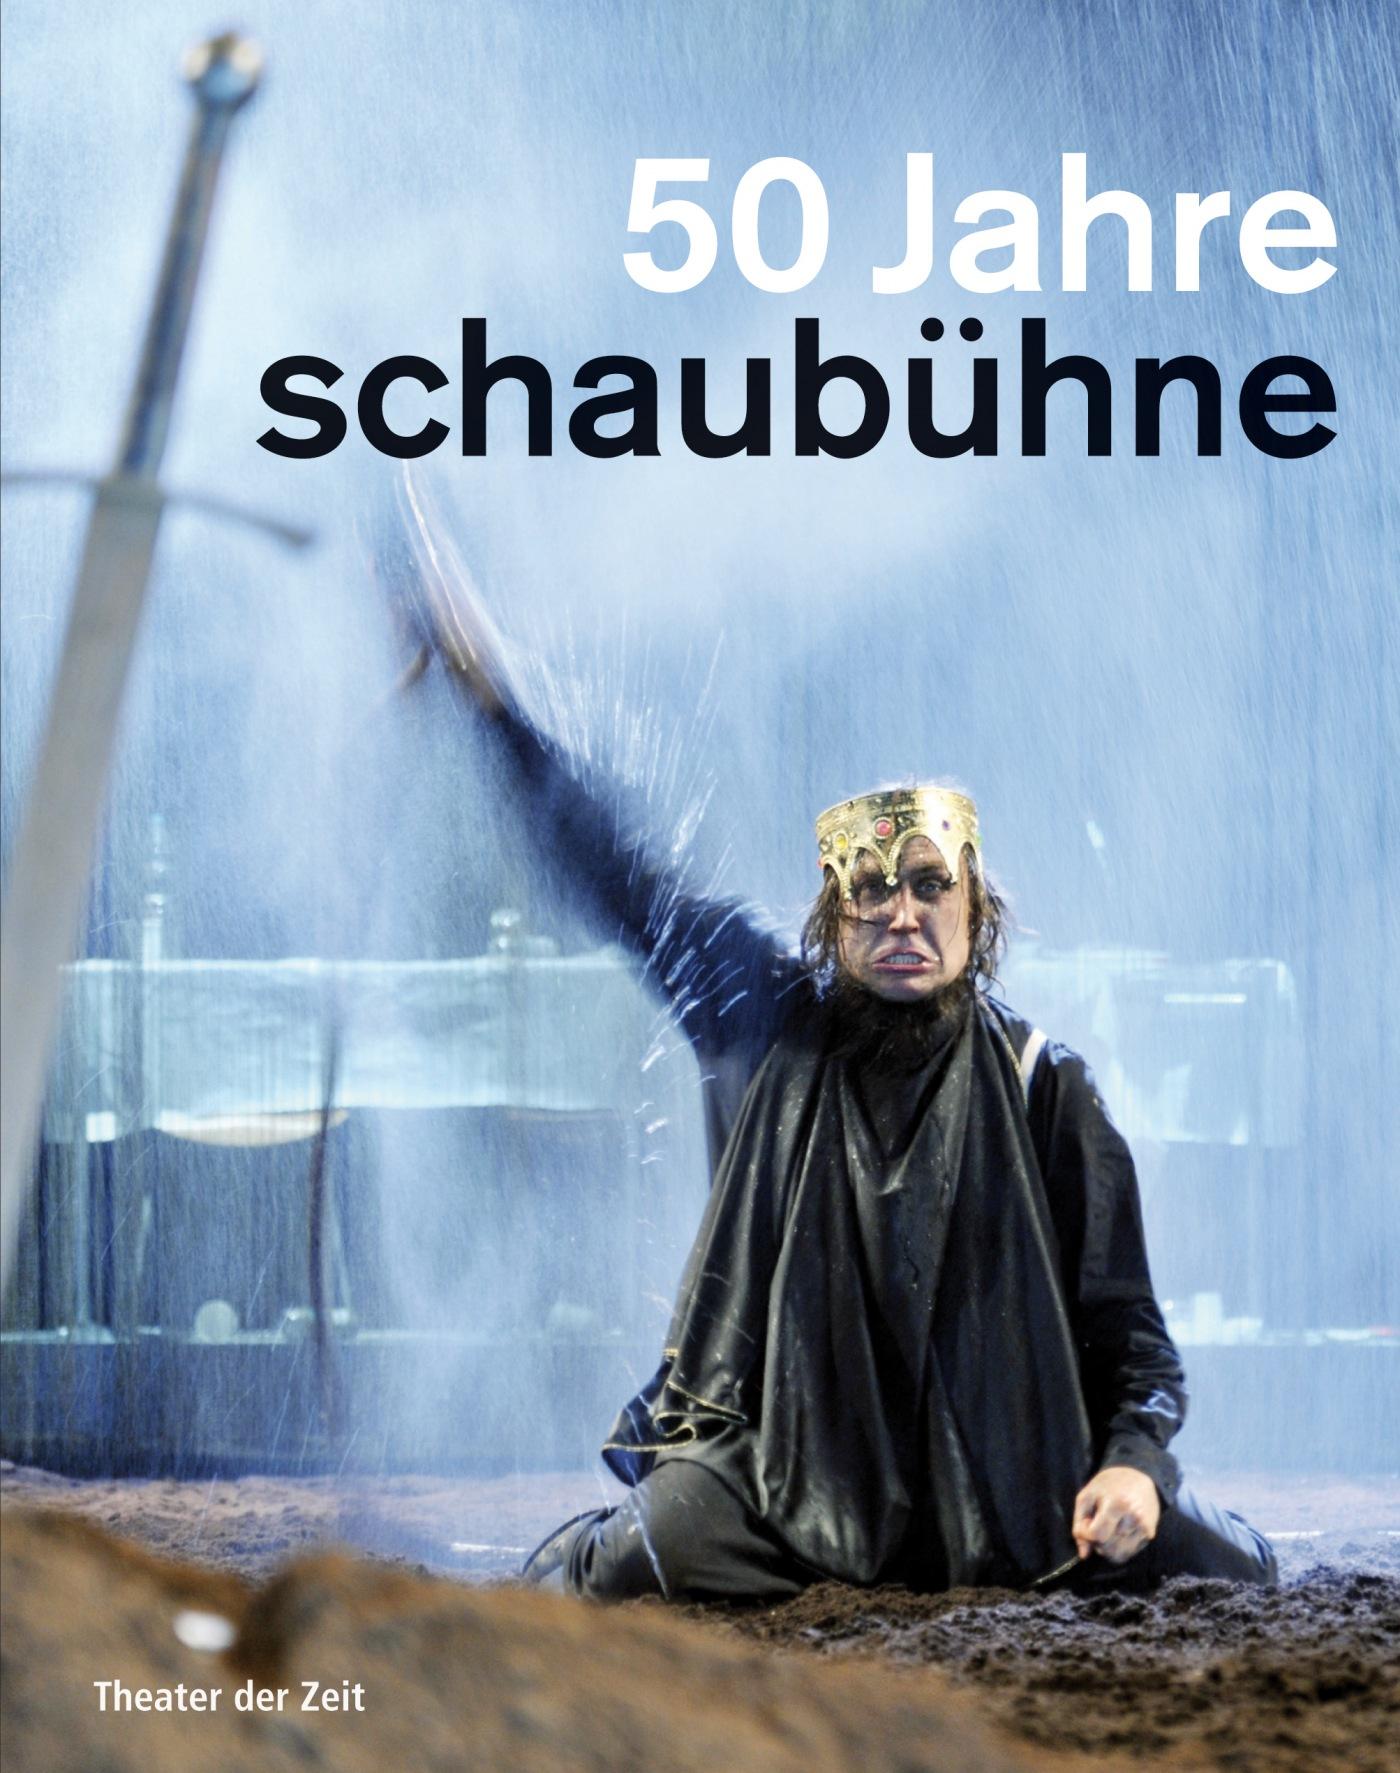 "50 Jahre Schaubühne"